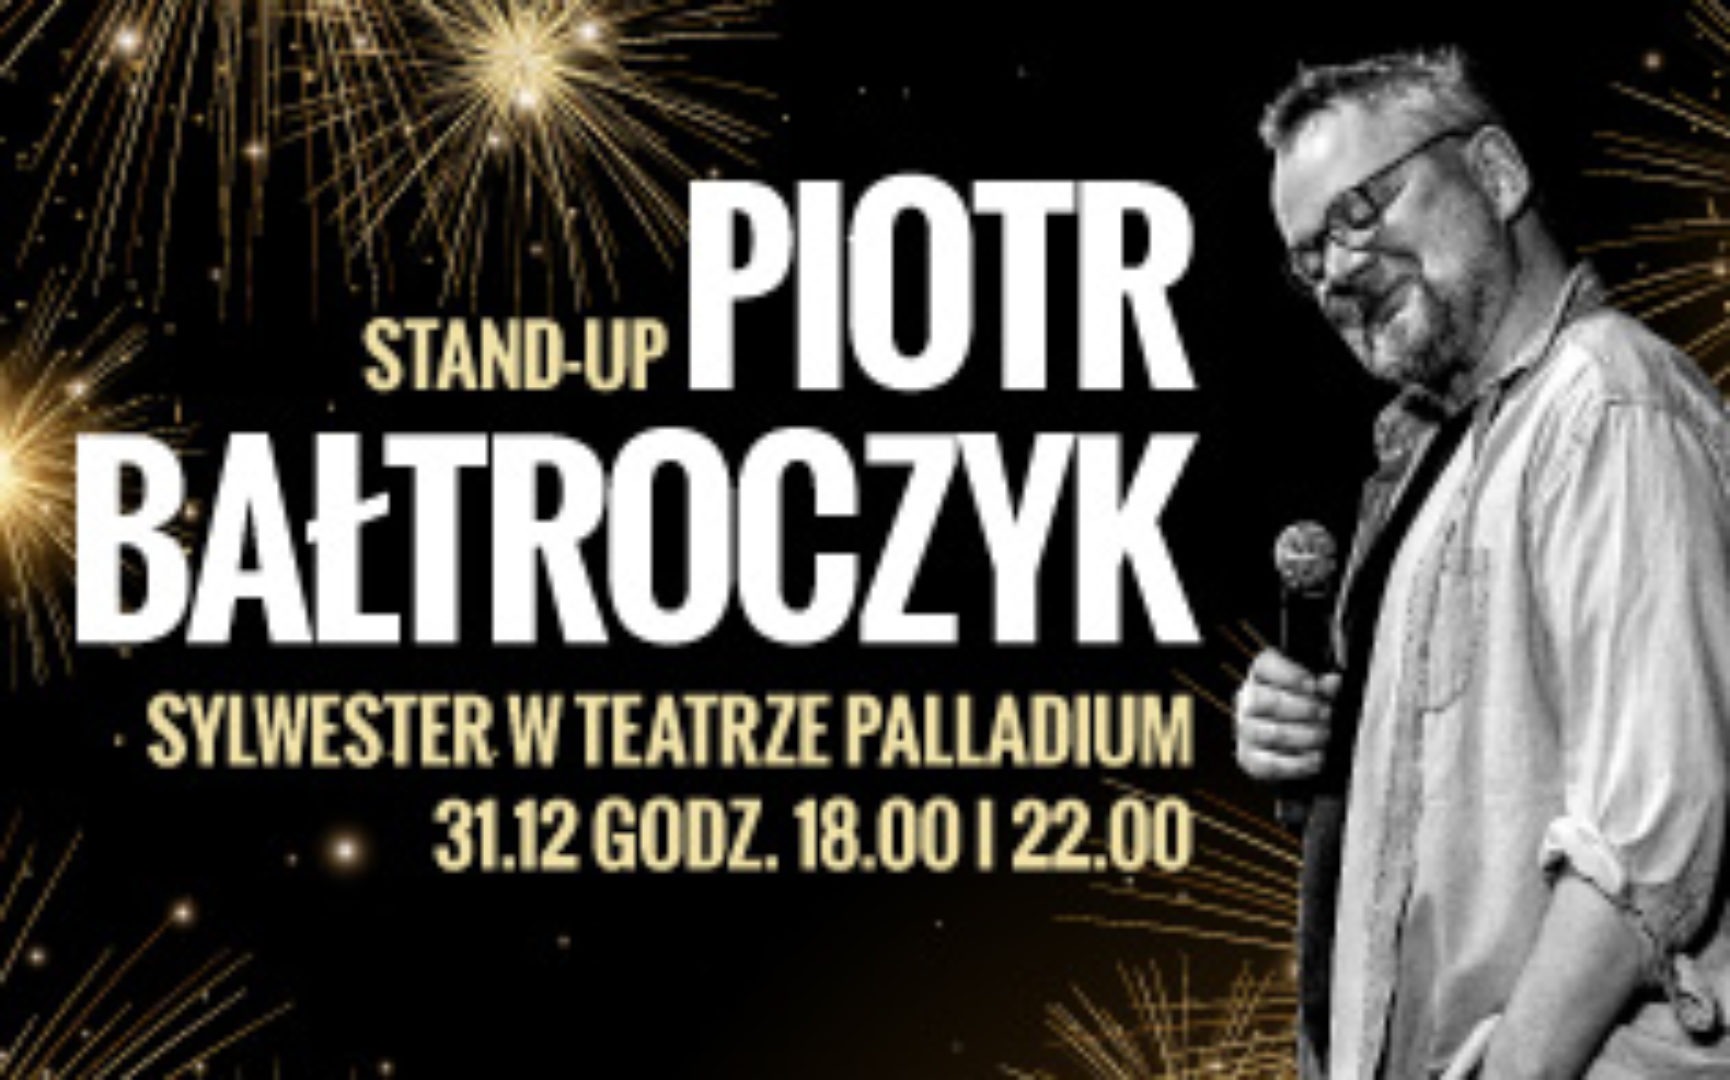 Piotr Bałtroczyk – sylwestrowy stand-up